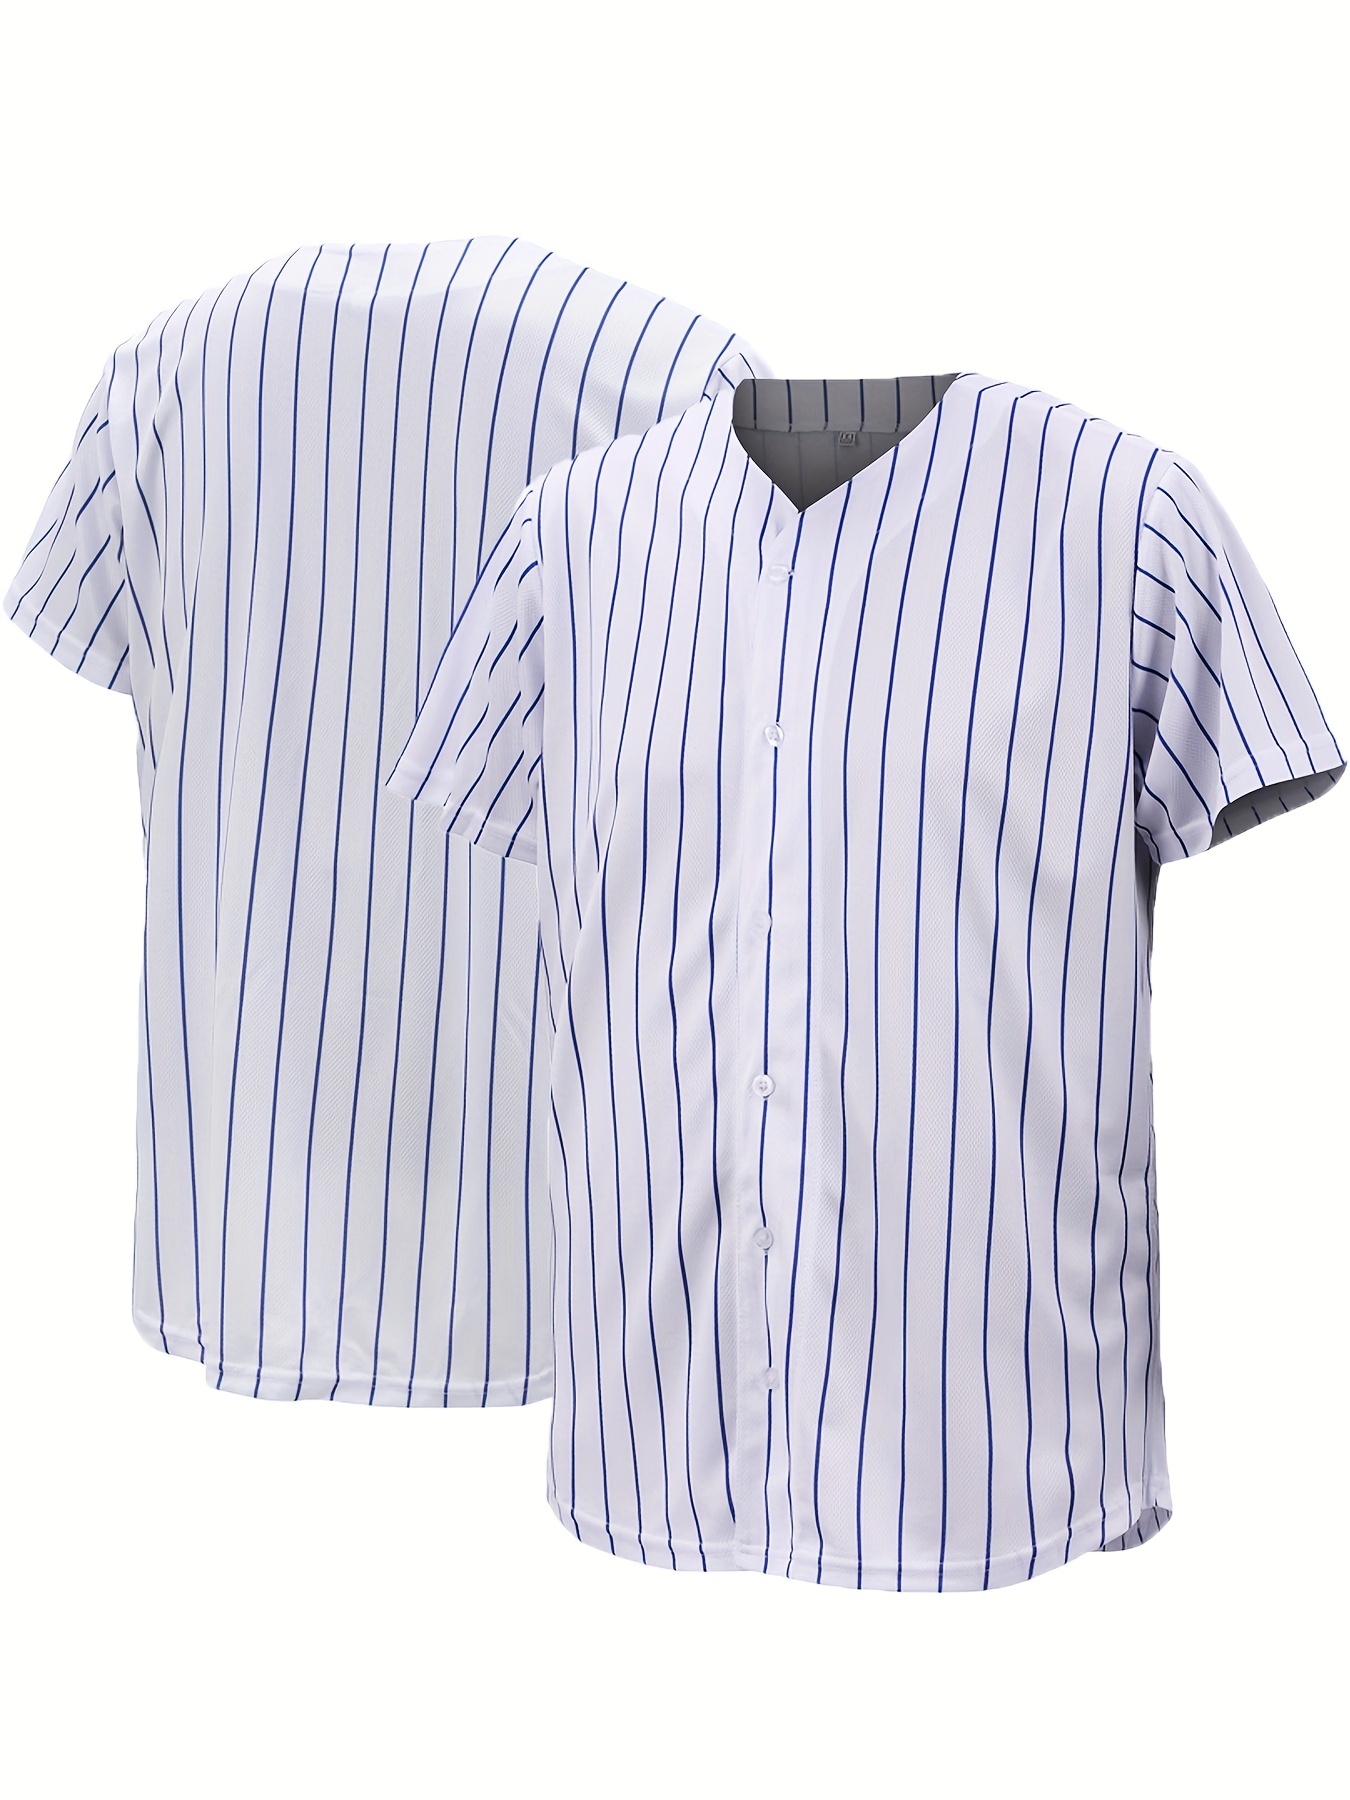 Mens Baseball JERSEY Polyester Plain TShirt Team Sport Button